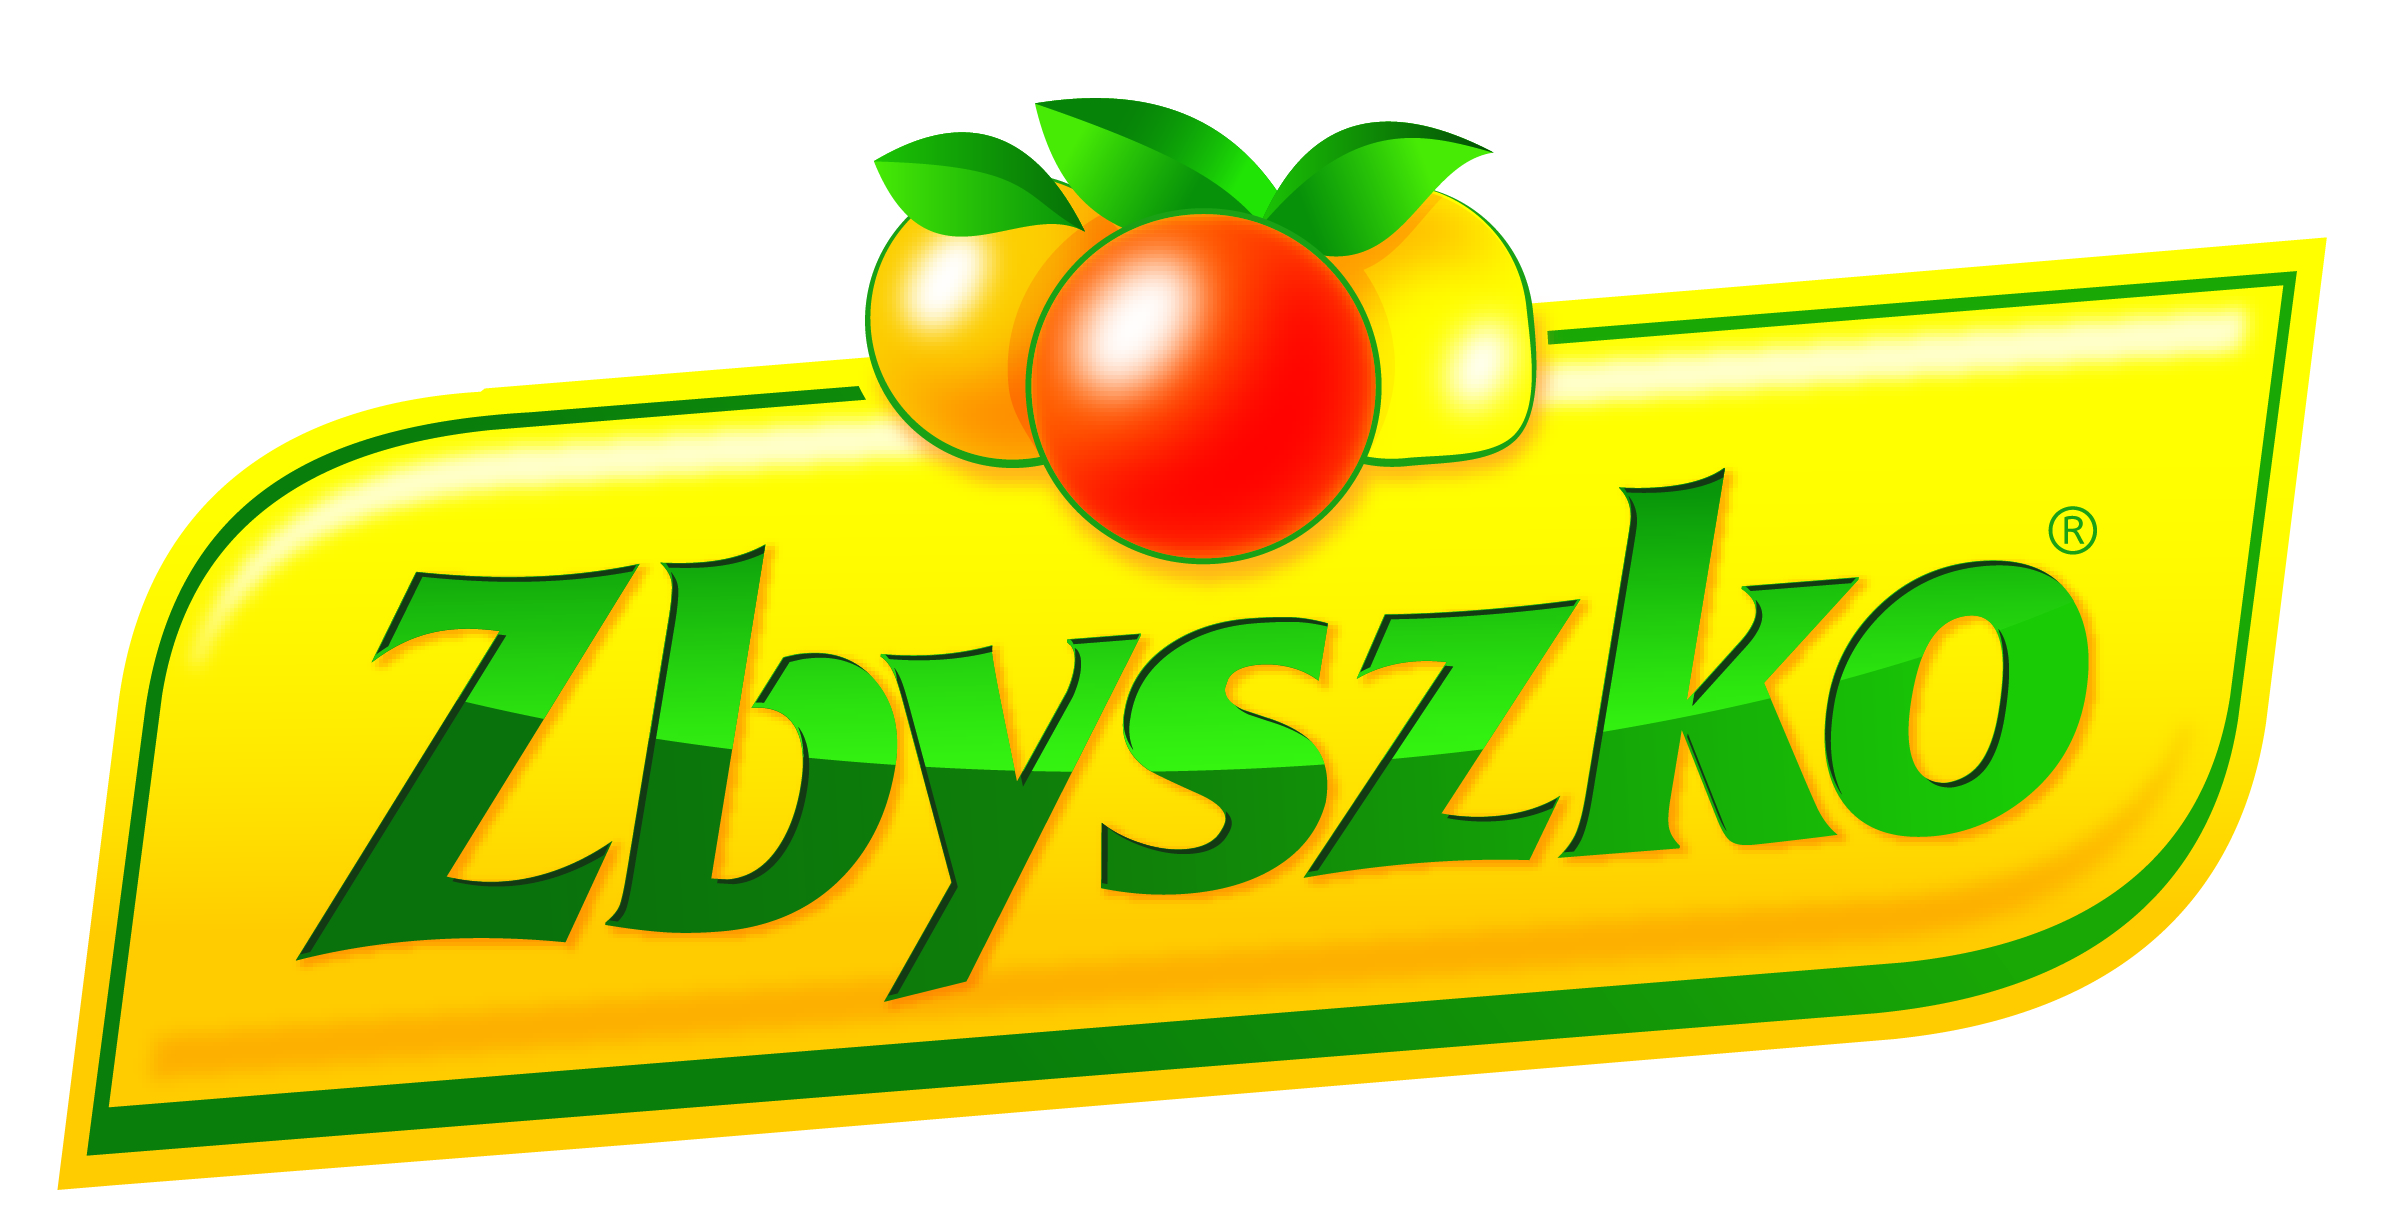 Zbyszko Company zbuduje fabrykę w Pile